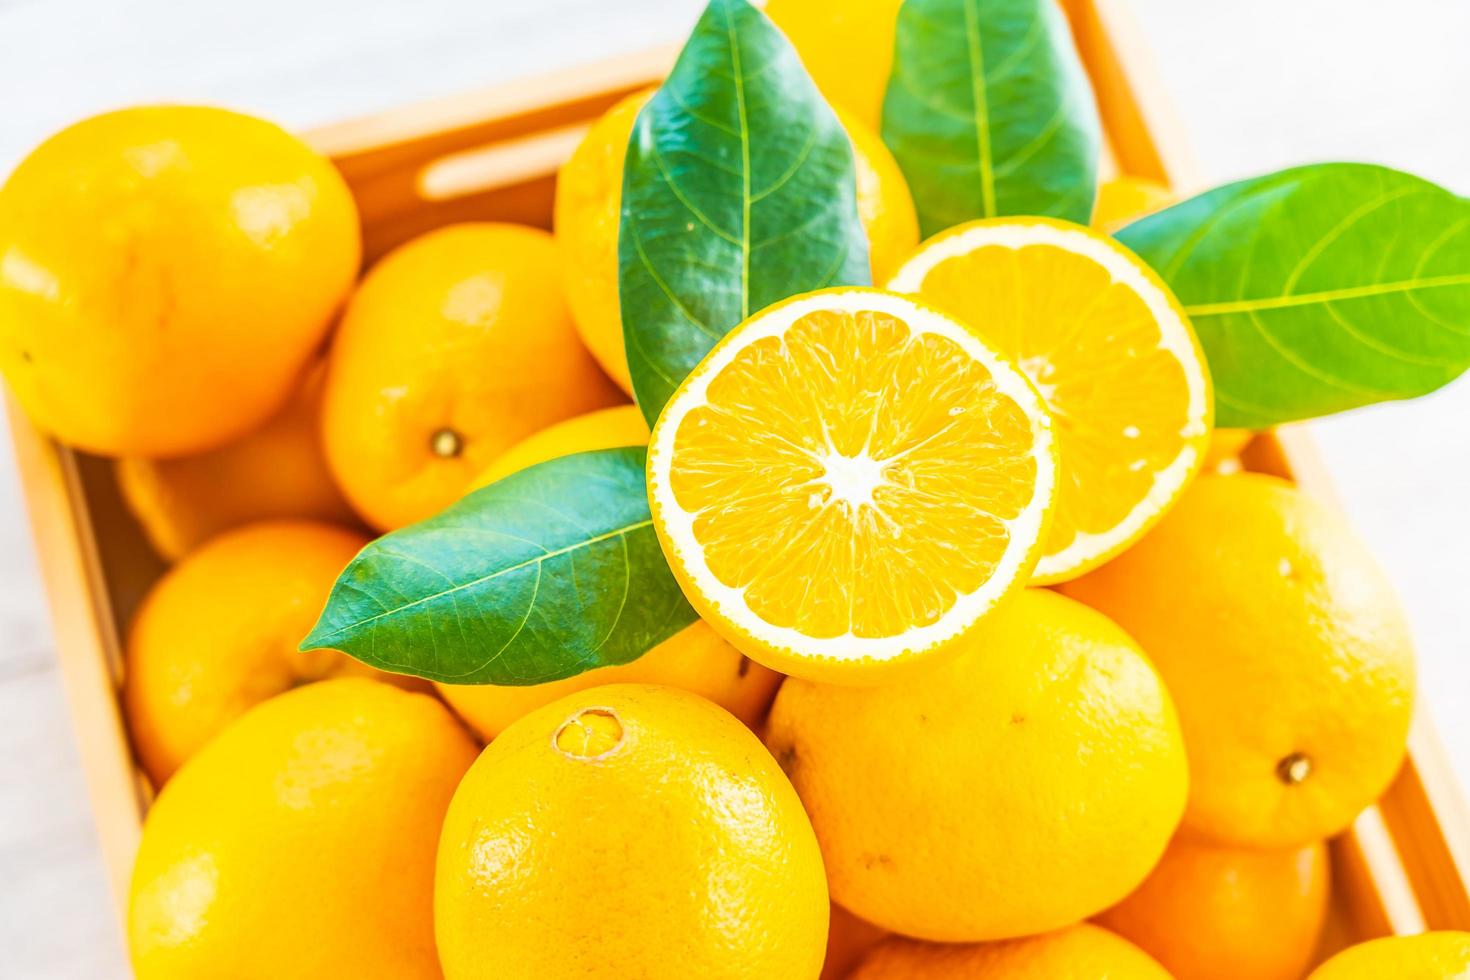 laranjas frescas na mesa foto